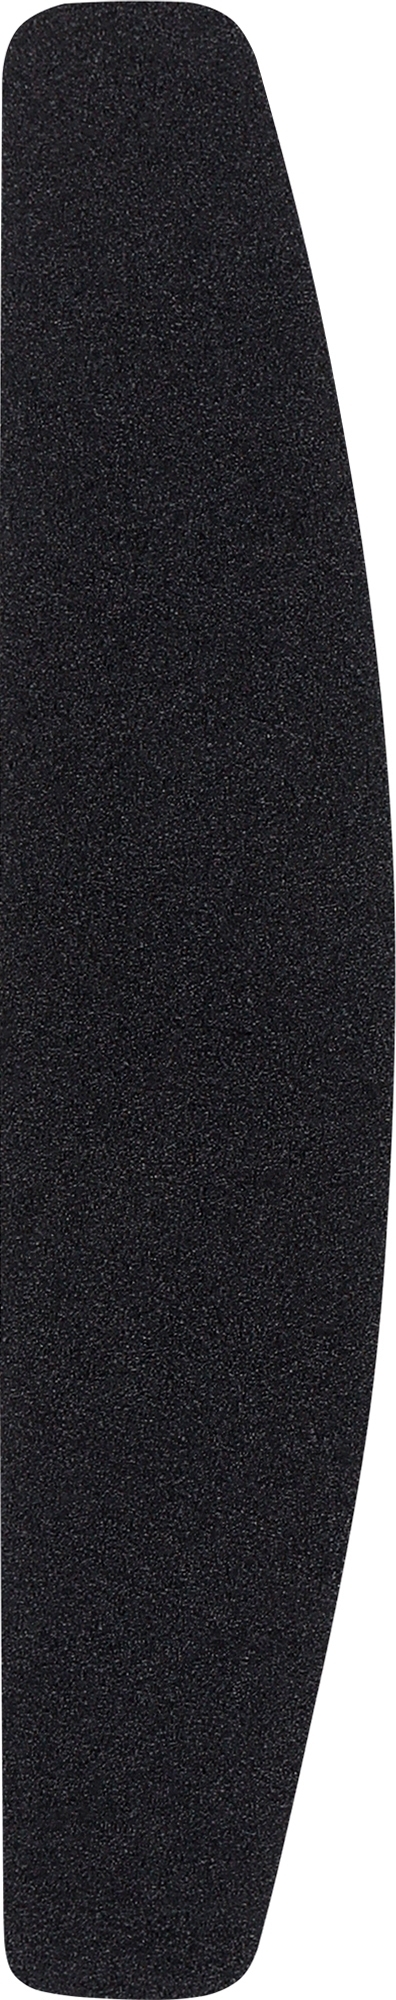 Змінні файли для пилки з м'яким шаром, півмісяць, 110 мм, 240 грит, чорні - ThePilochki — фото 50шт